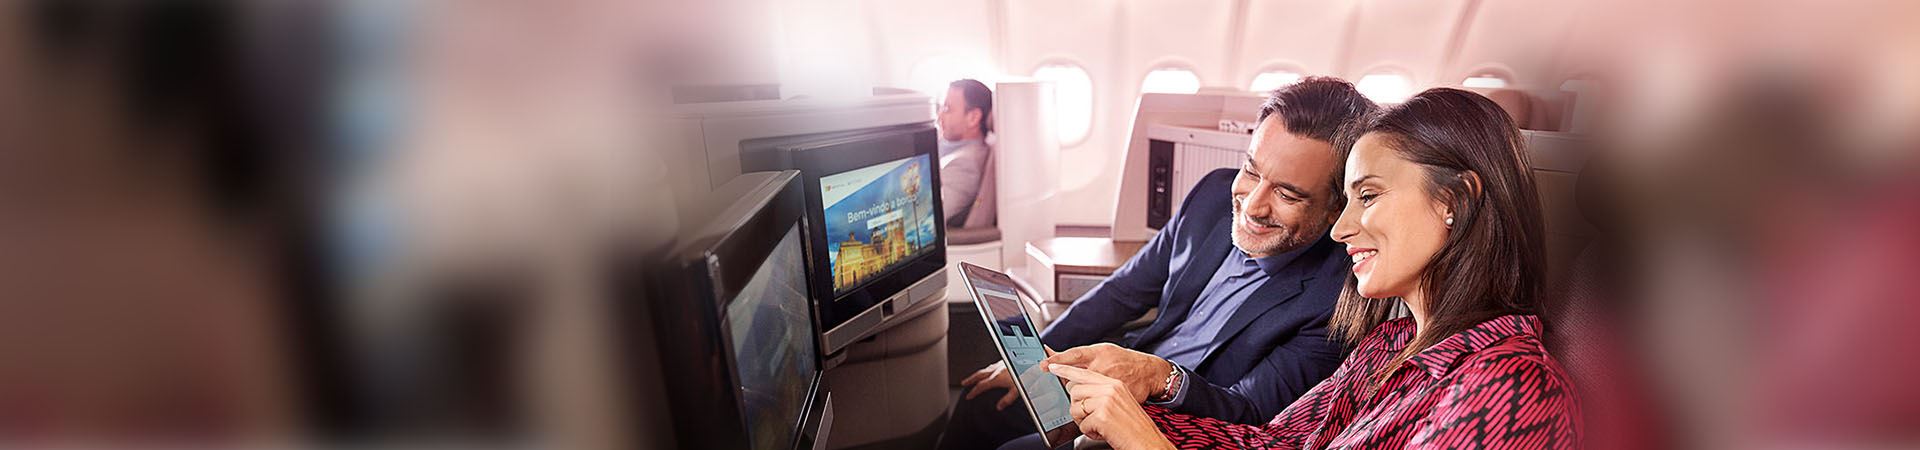 Plano aproximado de uma mulher e de um homem, sorridentes, sentados a bordo de um avião. A mulher está a segurar um tablet e o homem a olhar para o mesmo. Ambos apontam para o ecrã do tablet. À sua frente estão dois ecrãs, incorporados nos bancos do avião.